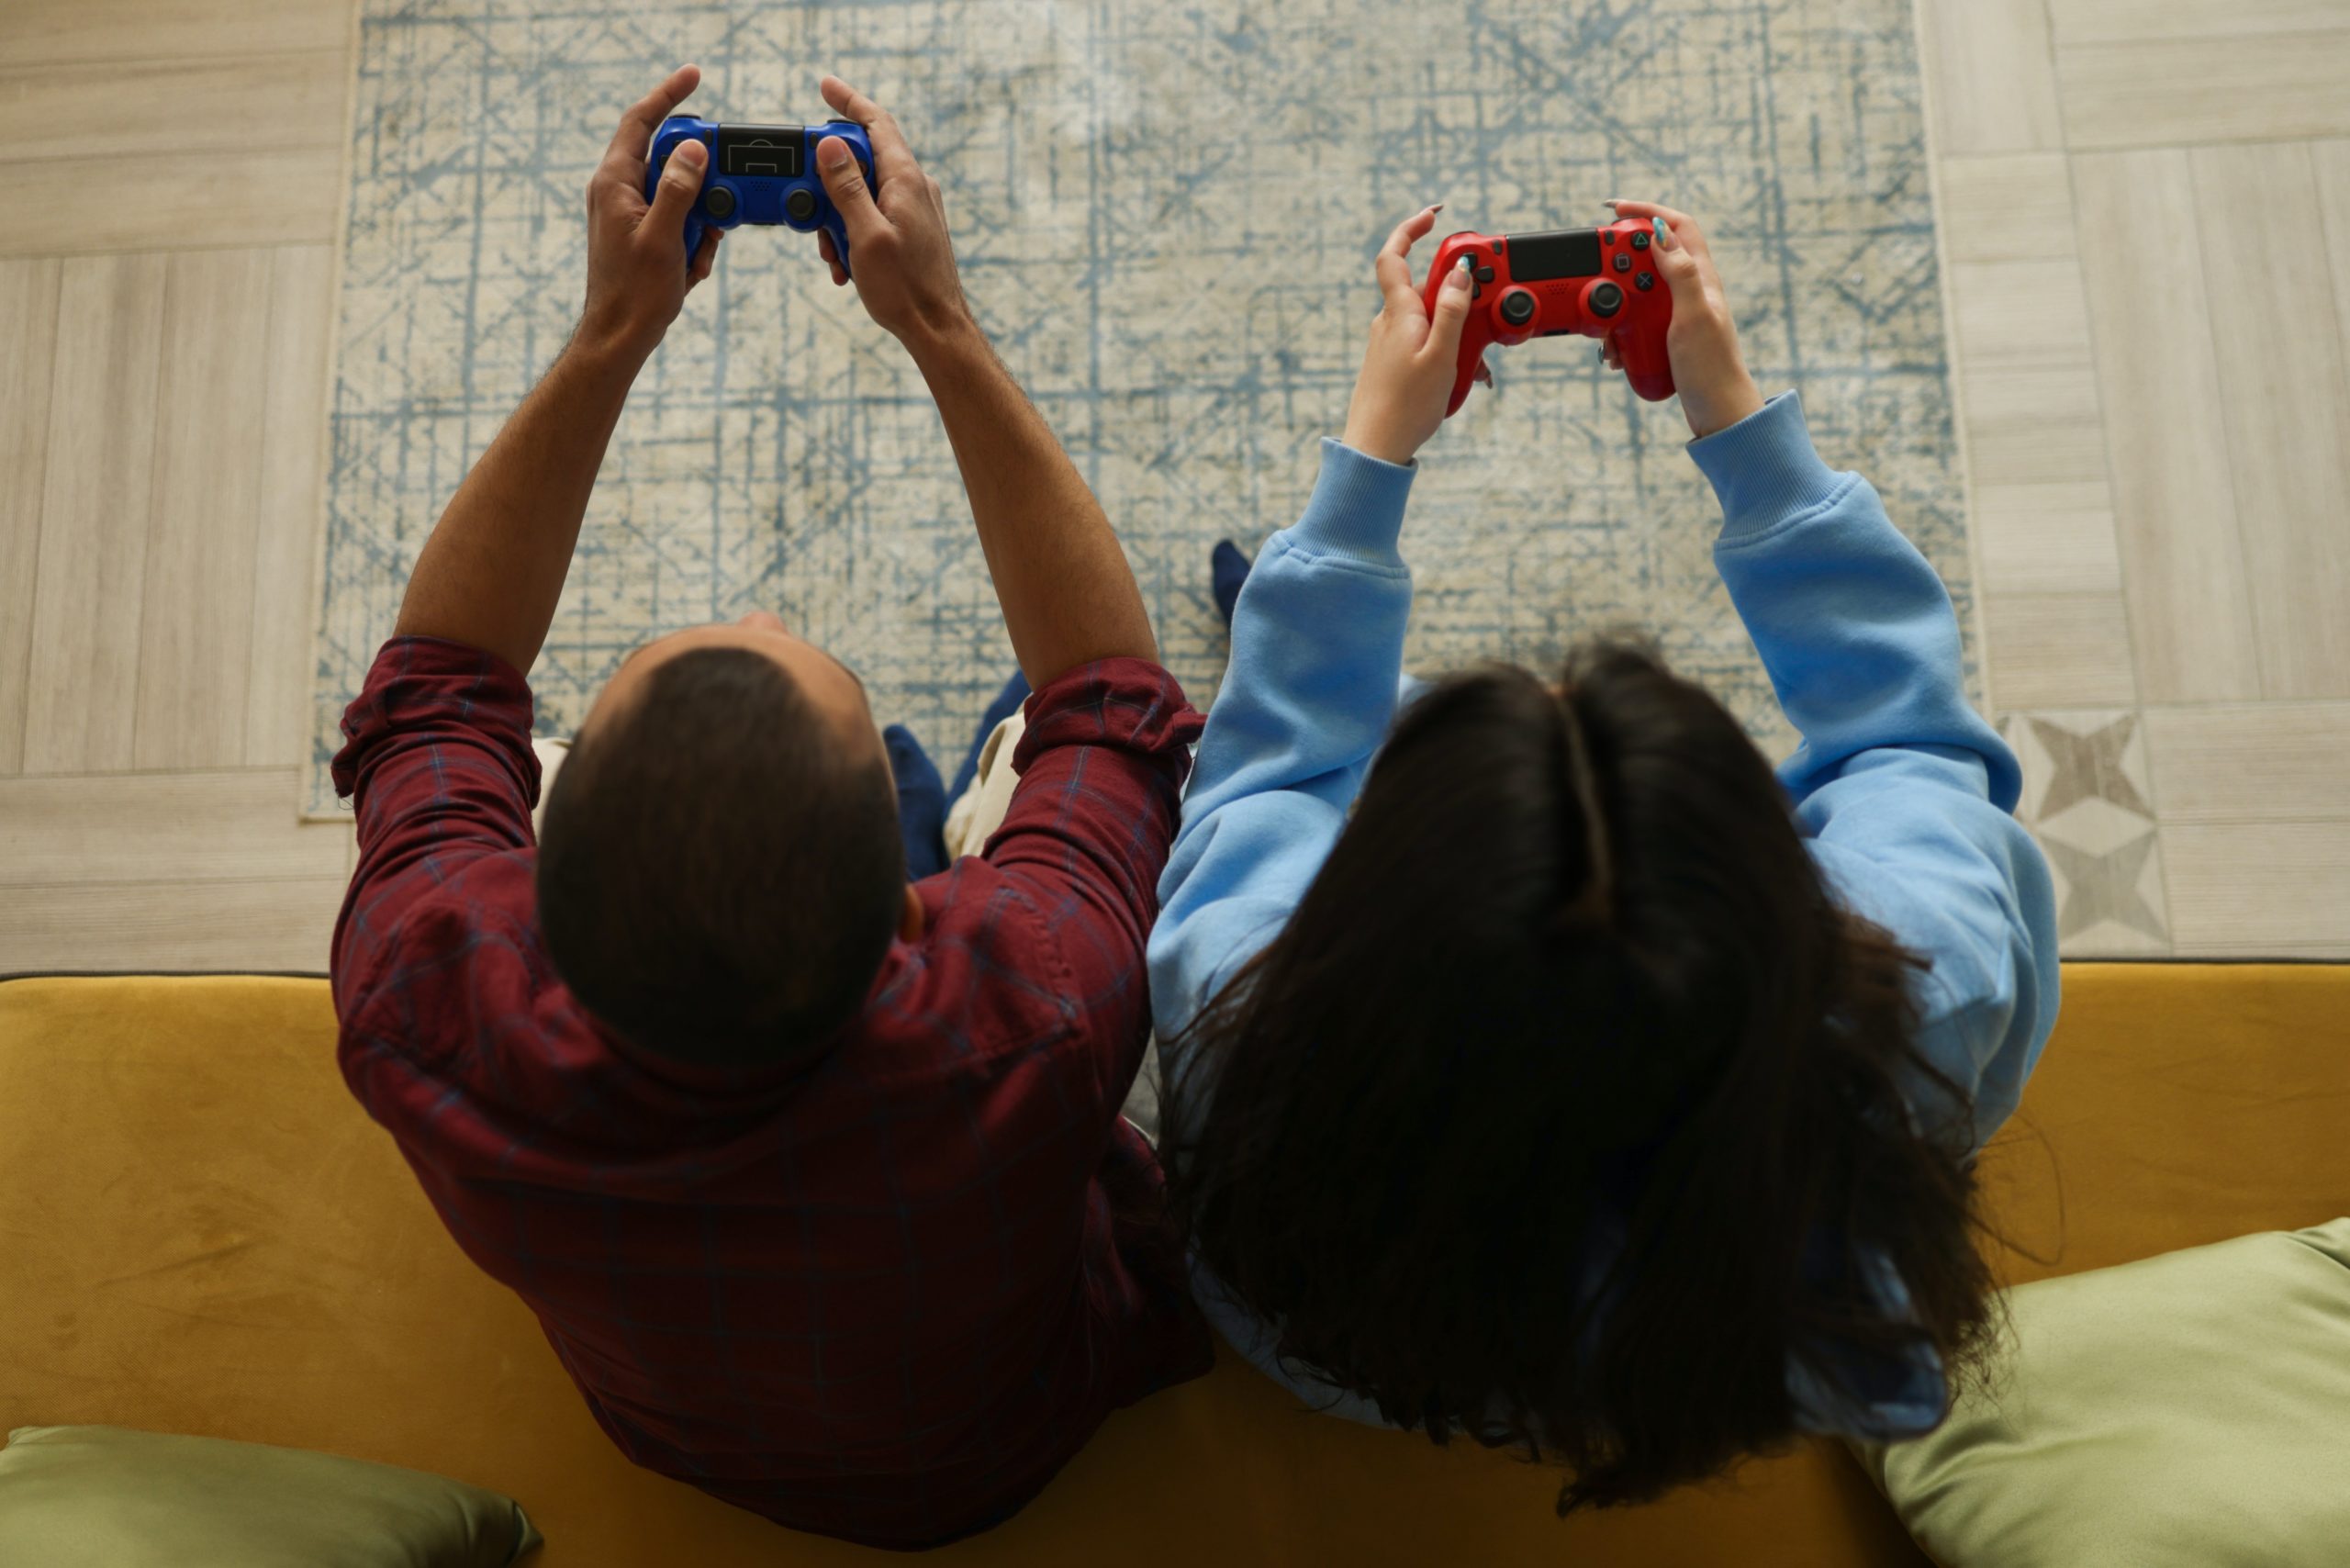 Jovens de periferias apostam nos games como plataforma de ascensão